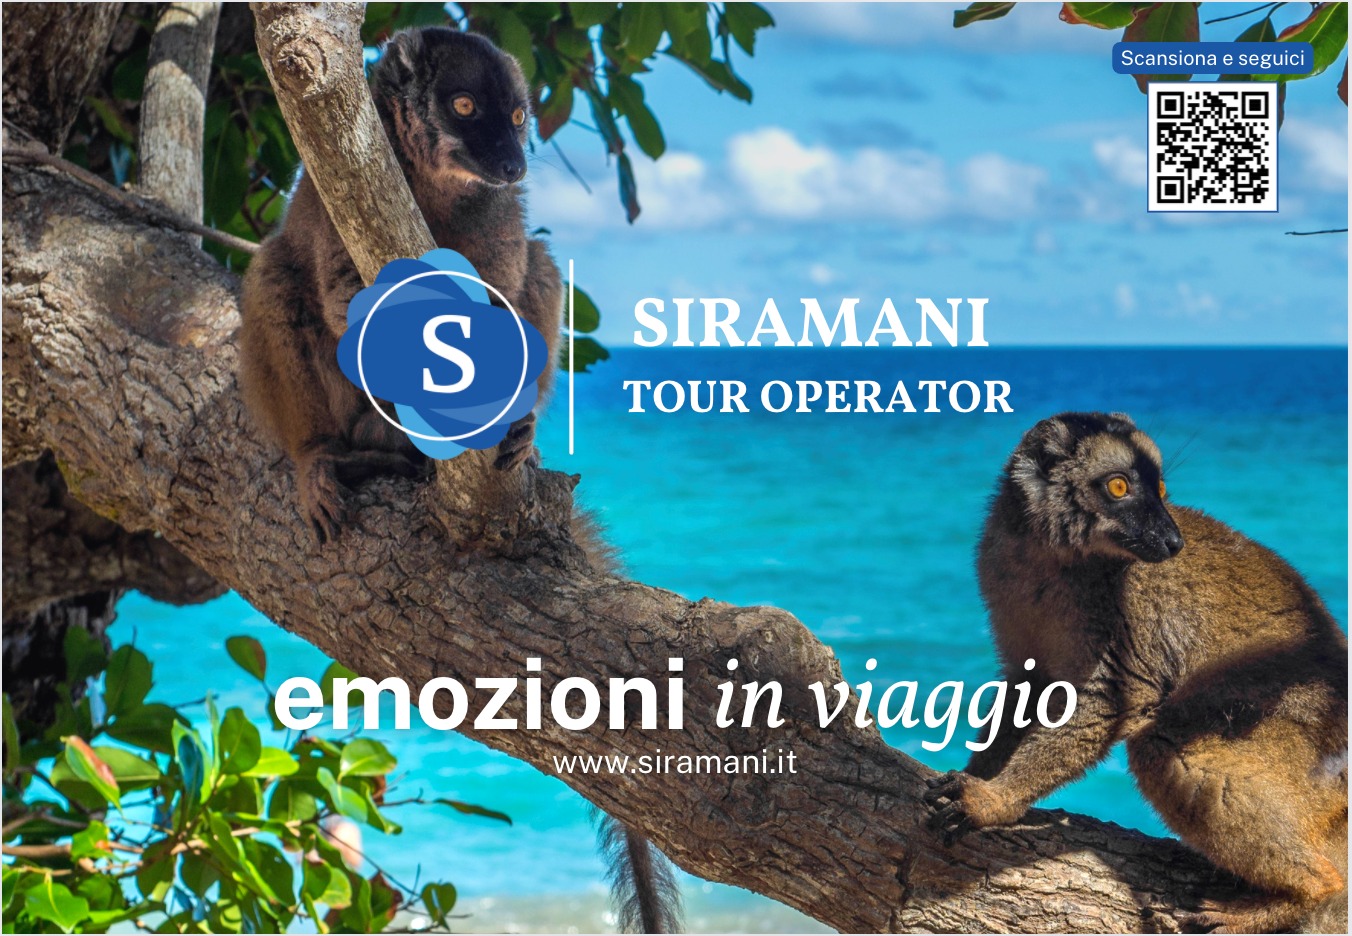 Siramani Tour Operator: emozioni in viaggio